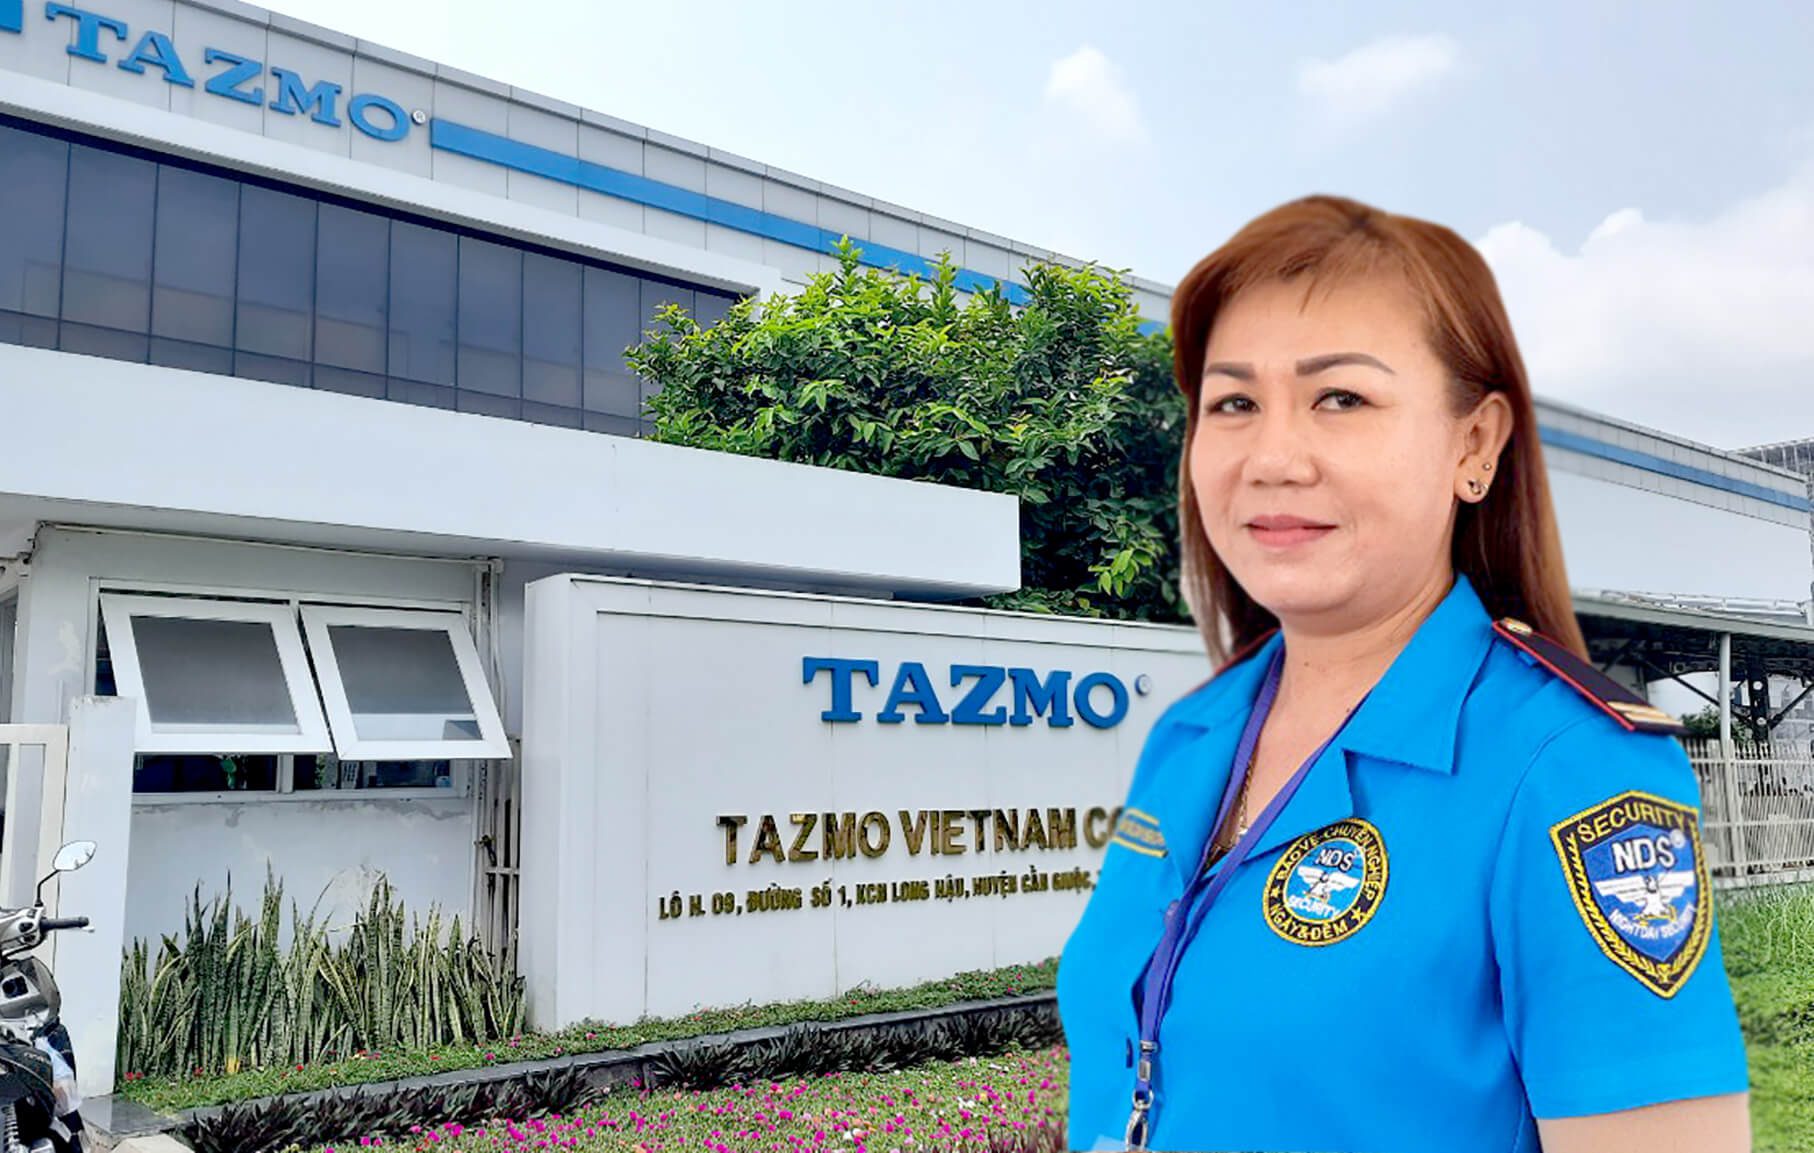 Nữ nhân viên bảo vệ Trần Thị Bích Huyền tại mục tiêu bảo vệ Tazmo Viet Nam